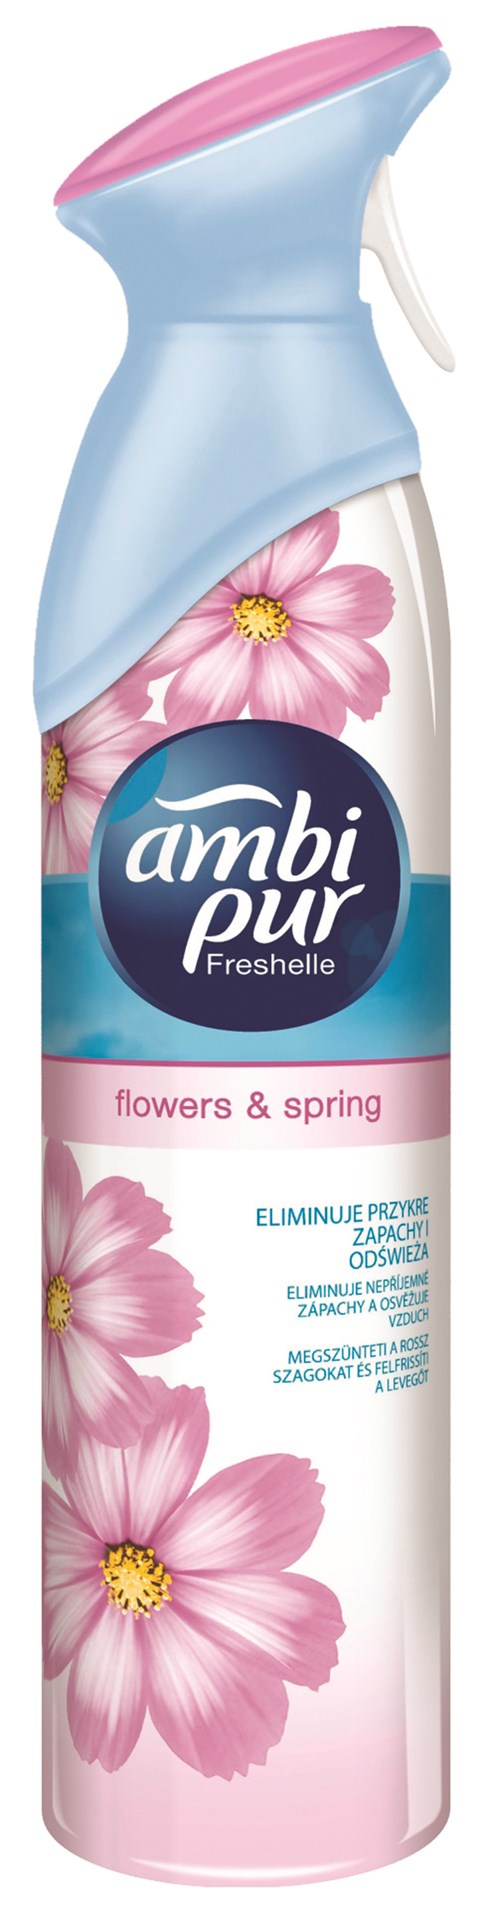 Odświeżacz powietrza AMBI PUR Flower&Spring, spray, 300ml